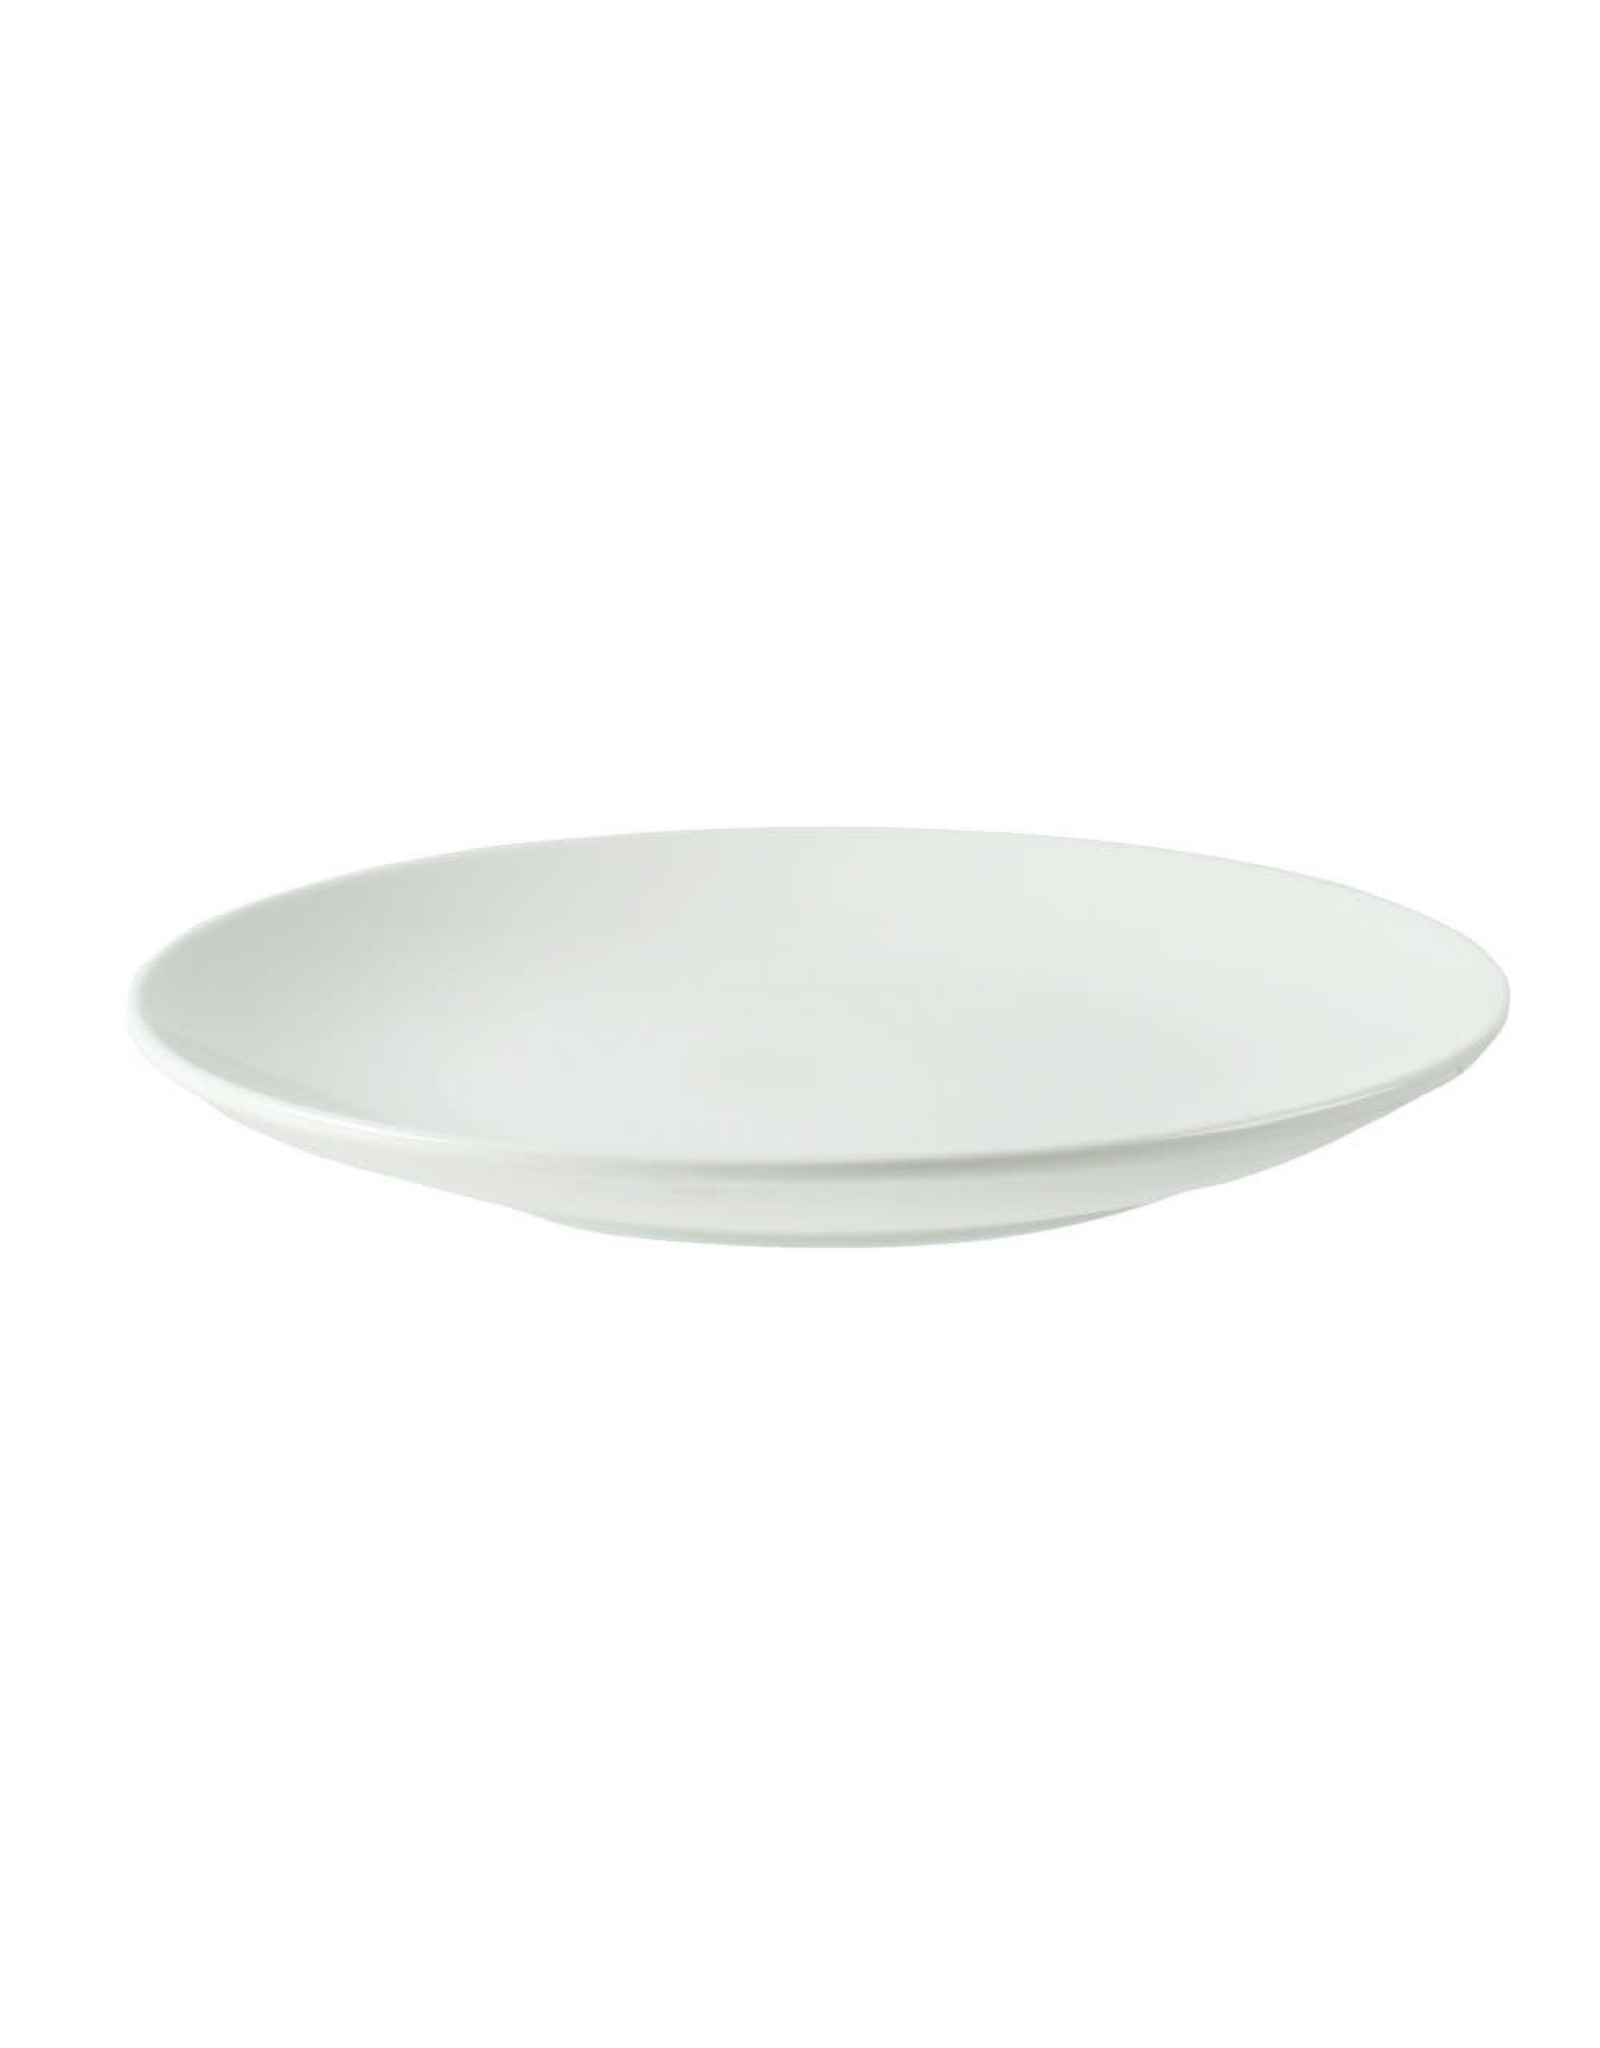 vt-wonen VT-WONEN. Plate Ivory/White 25.5cm